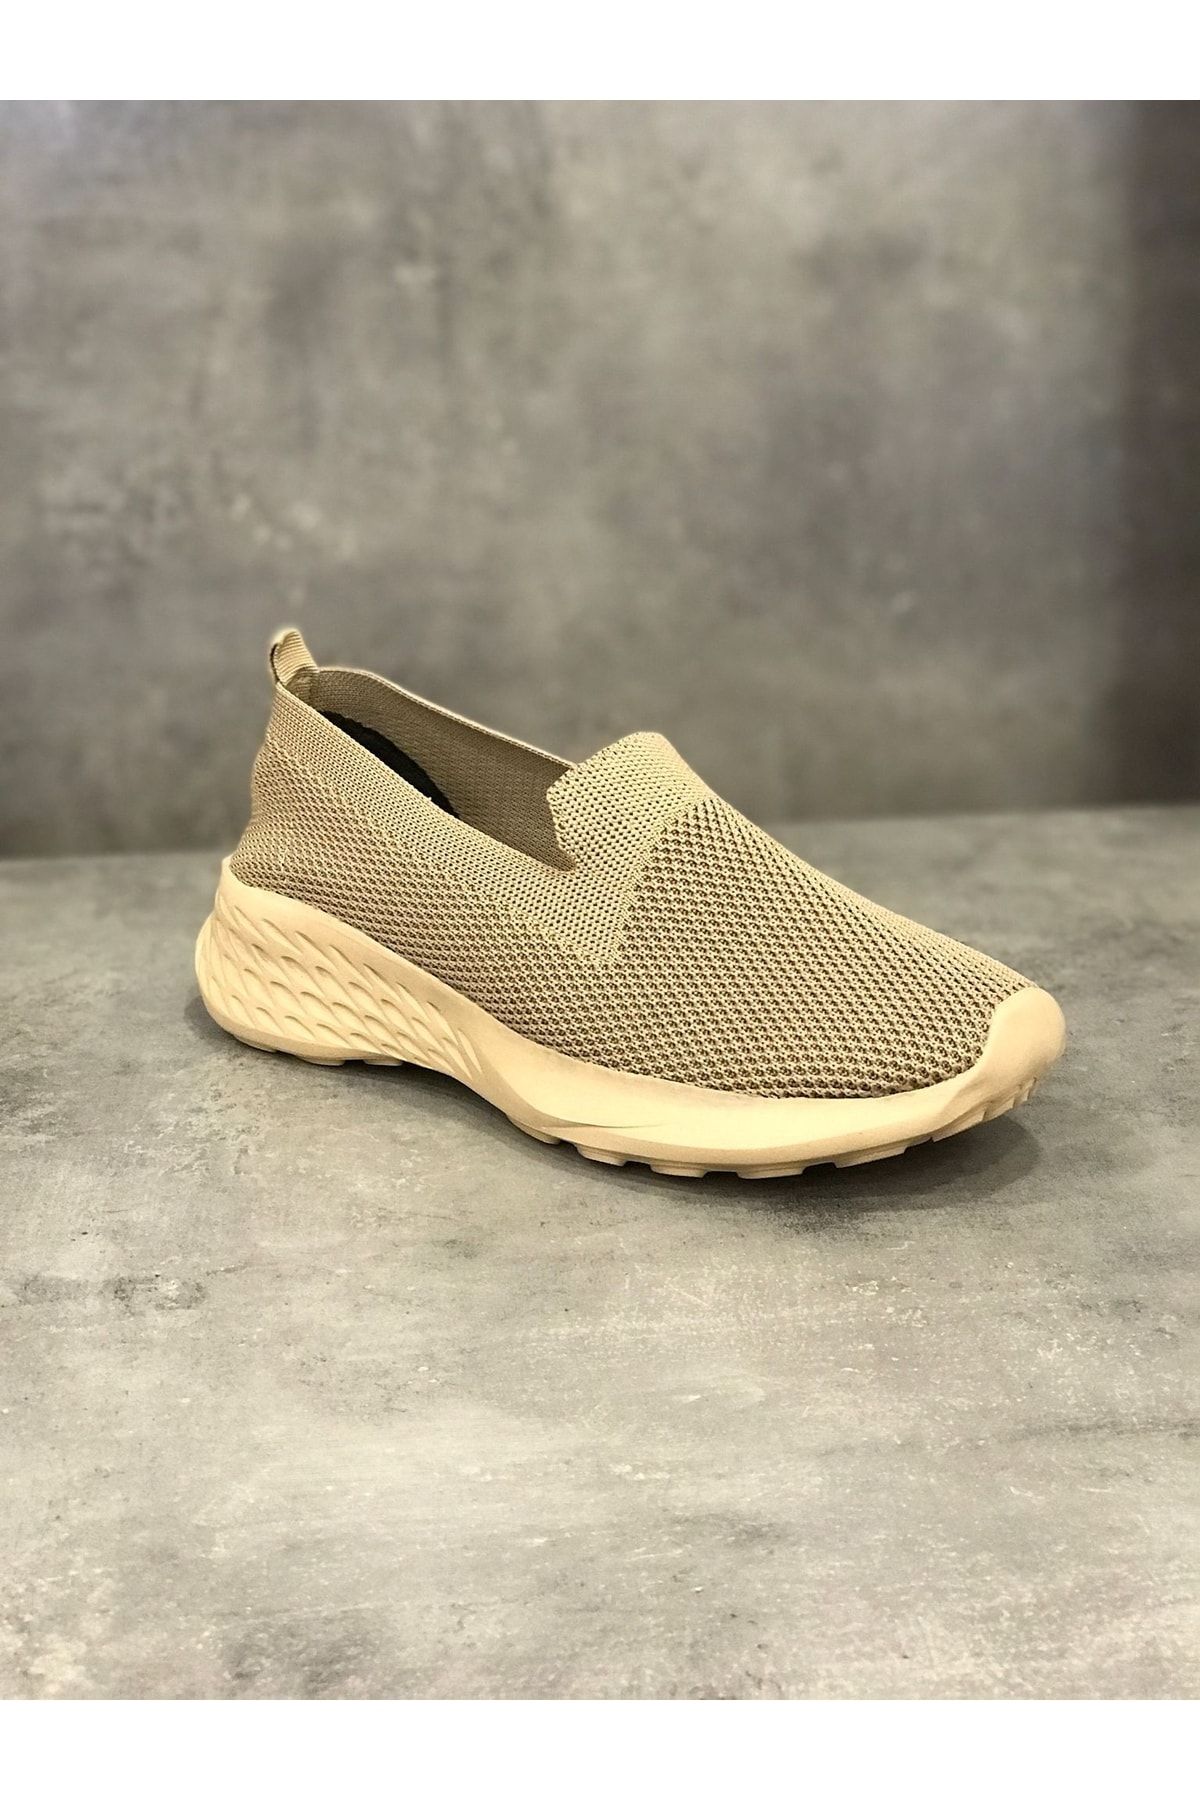 Akalın Ayakkabı Kahverengi - Swıft Kadın Spor Şık Günlük Yürüyüş Ortopedik Taban Ayakkabı